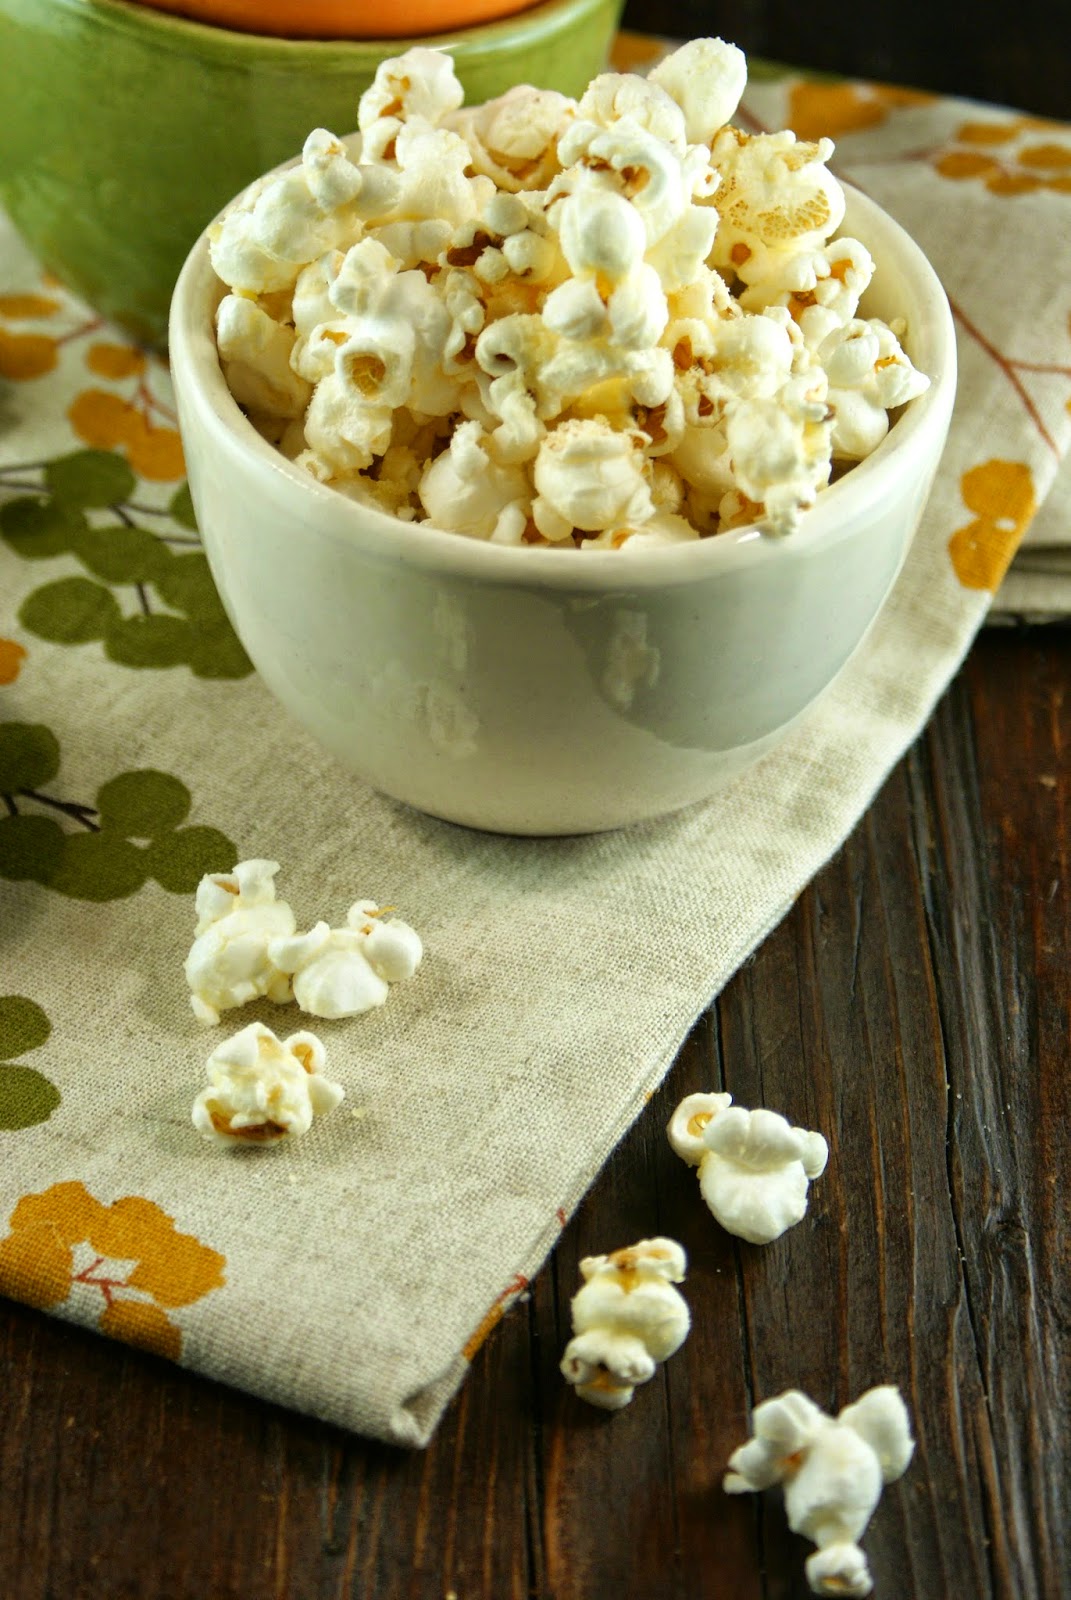 Authentic Suburban Gourmet: Chili Parmesan Popcorn | Secret Recipe Club